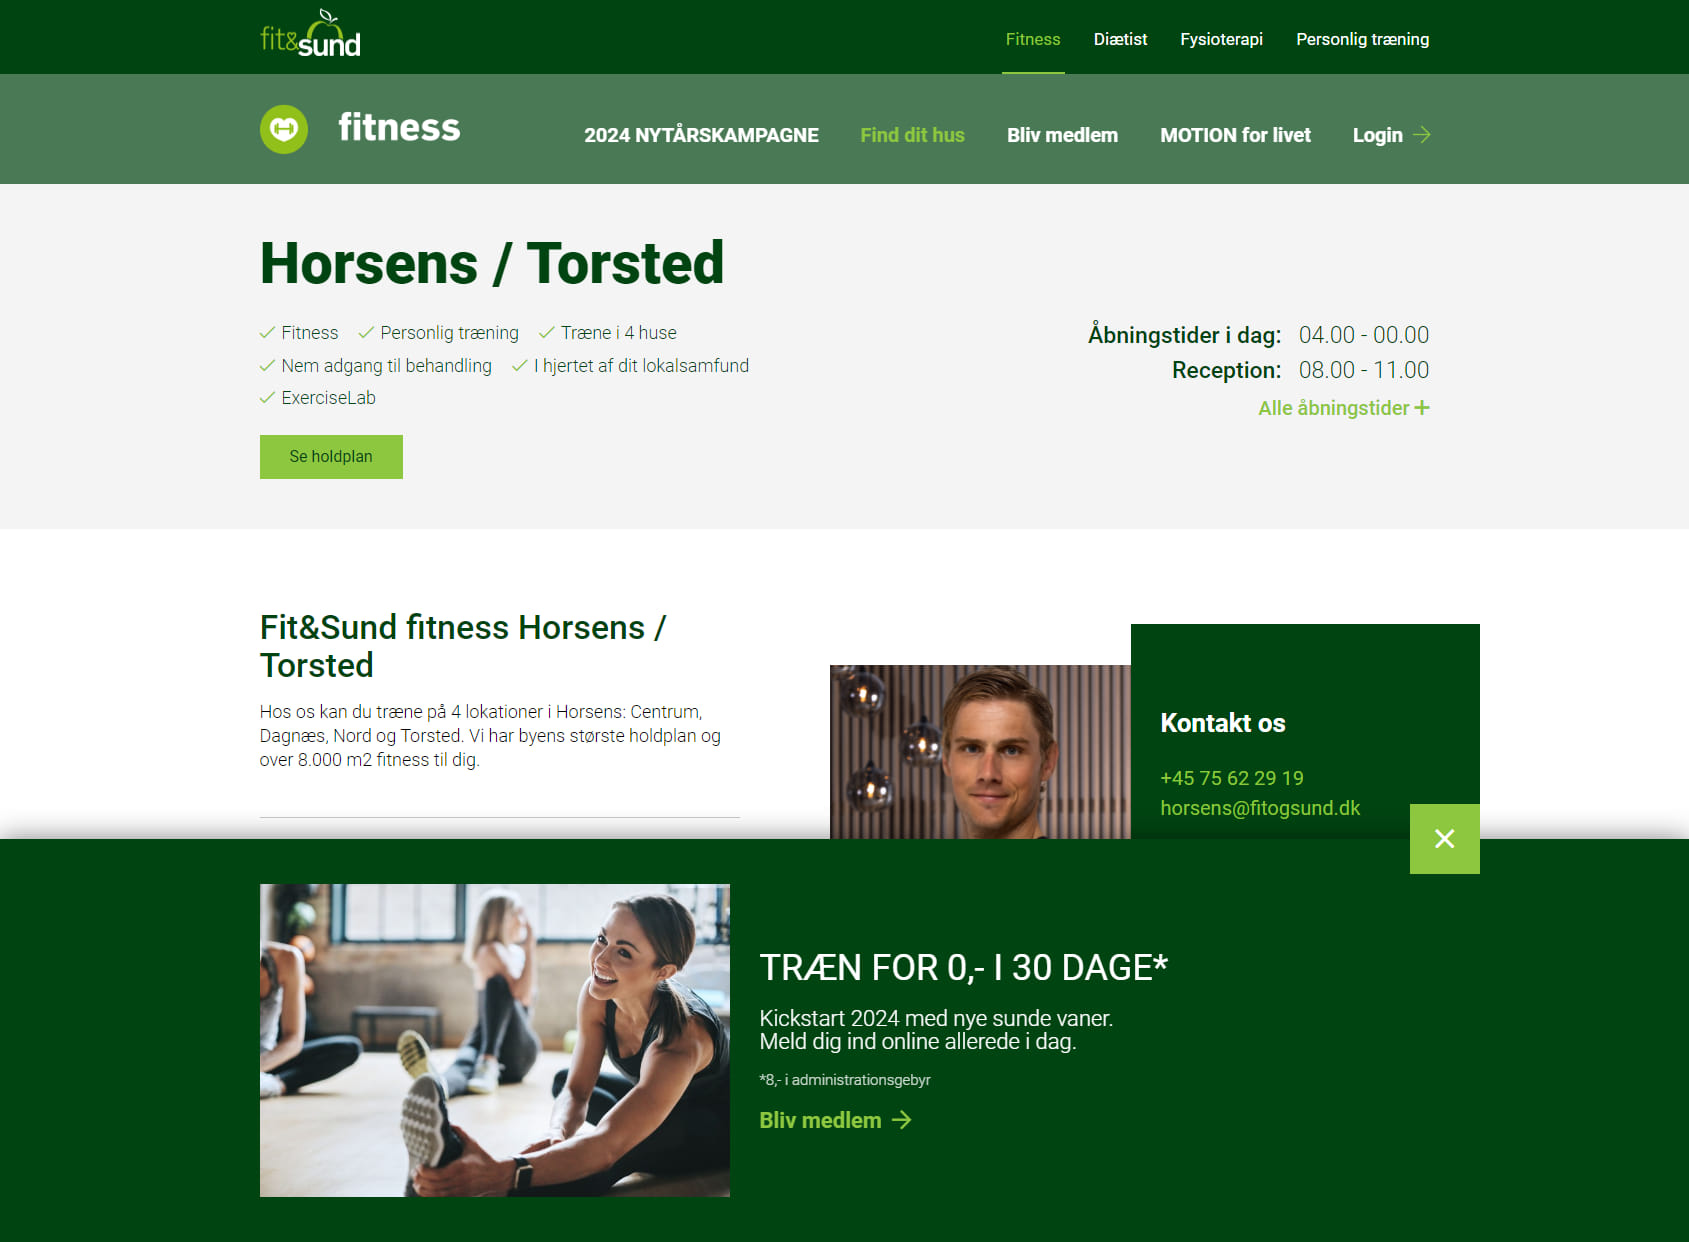 Fit&Sund Horsens/Torsted